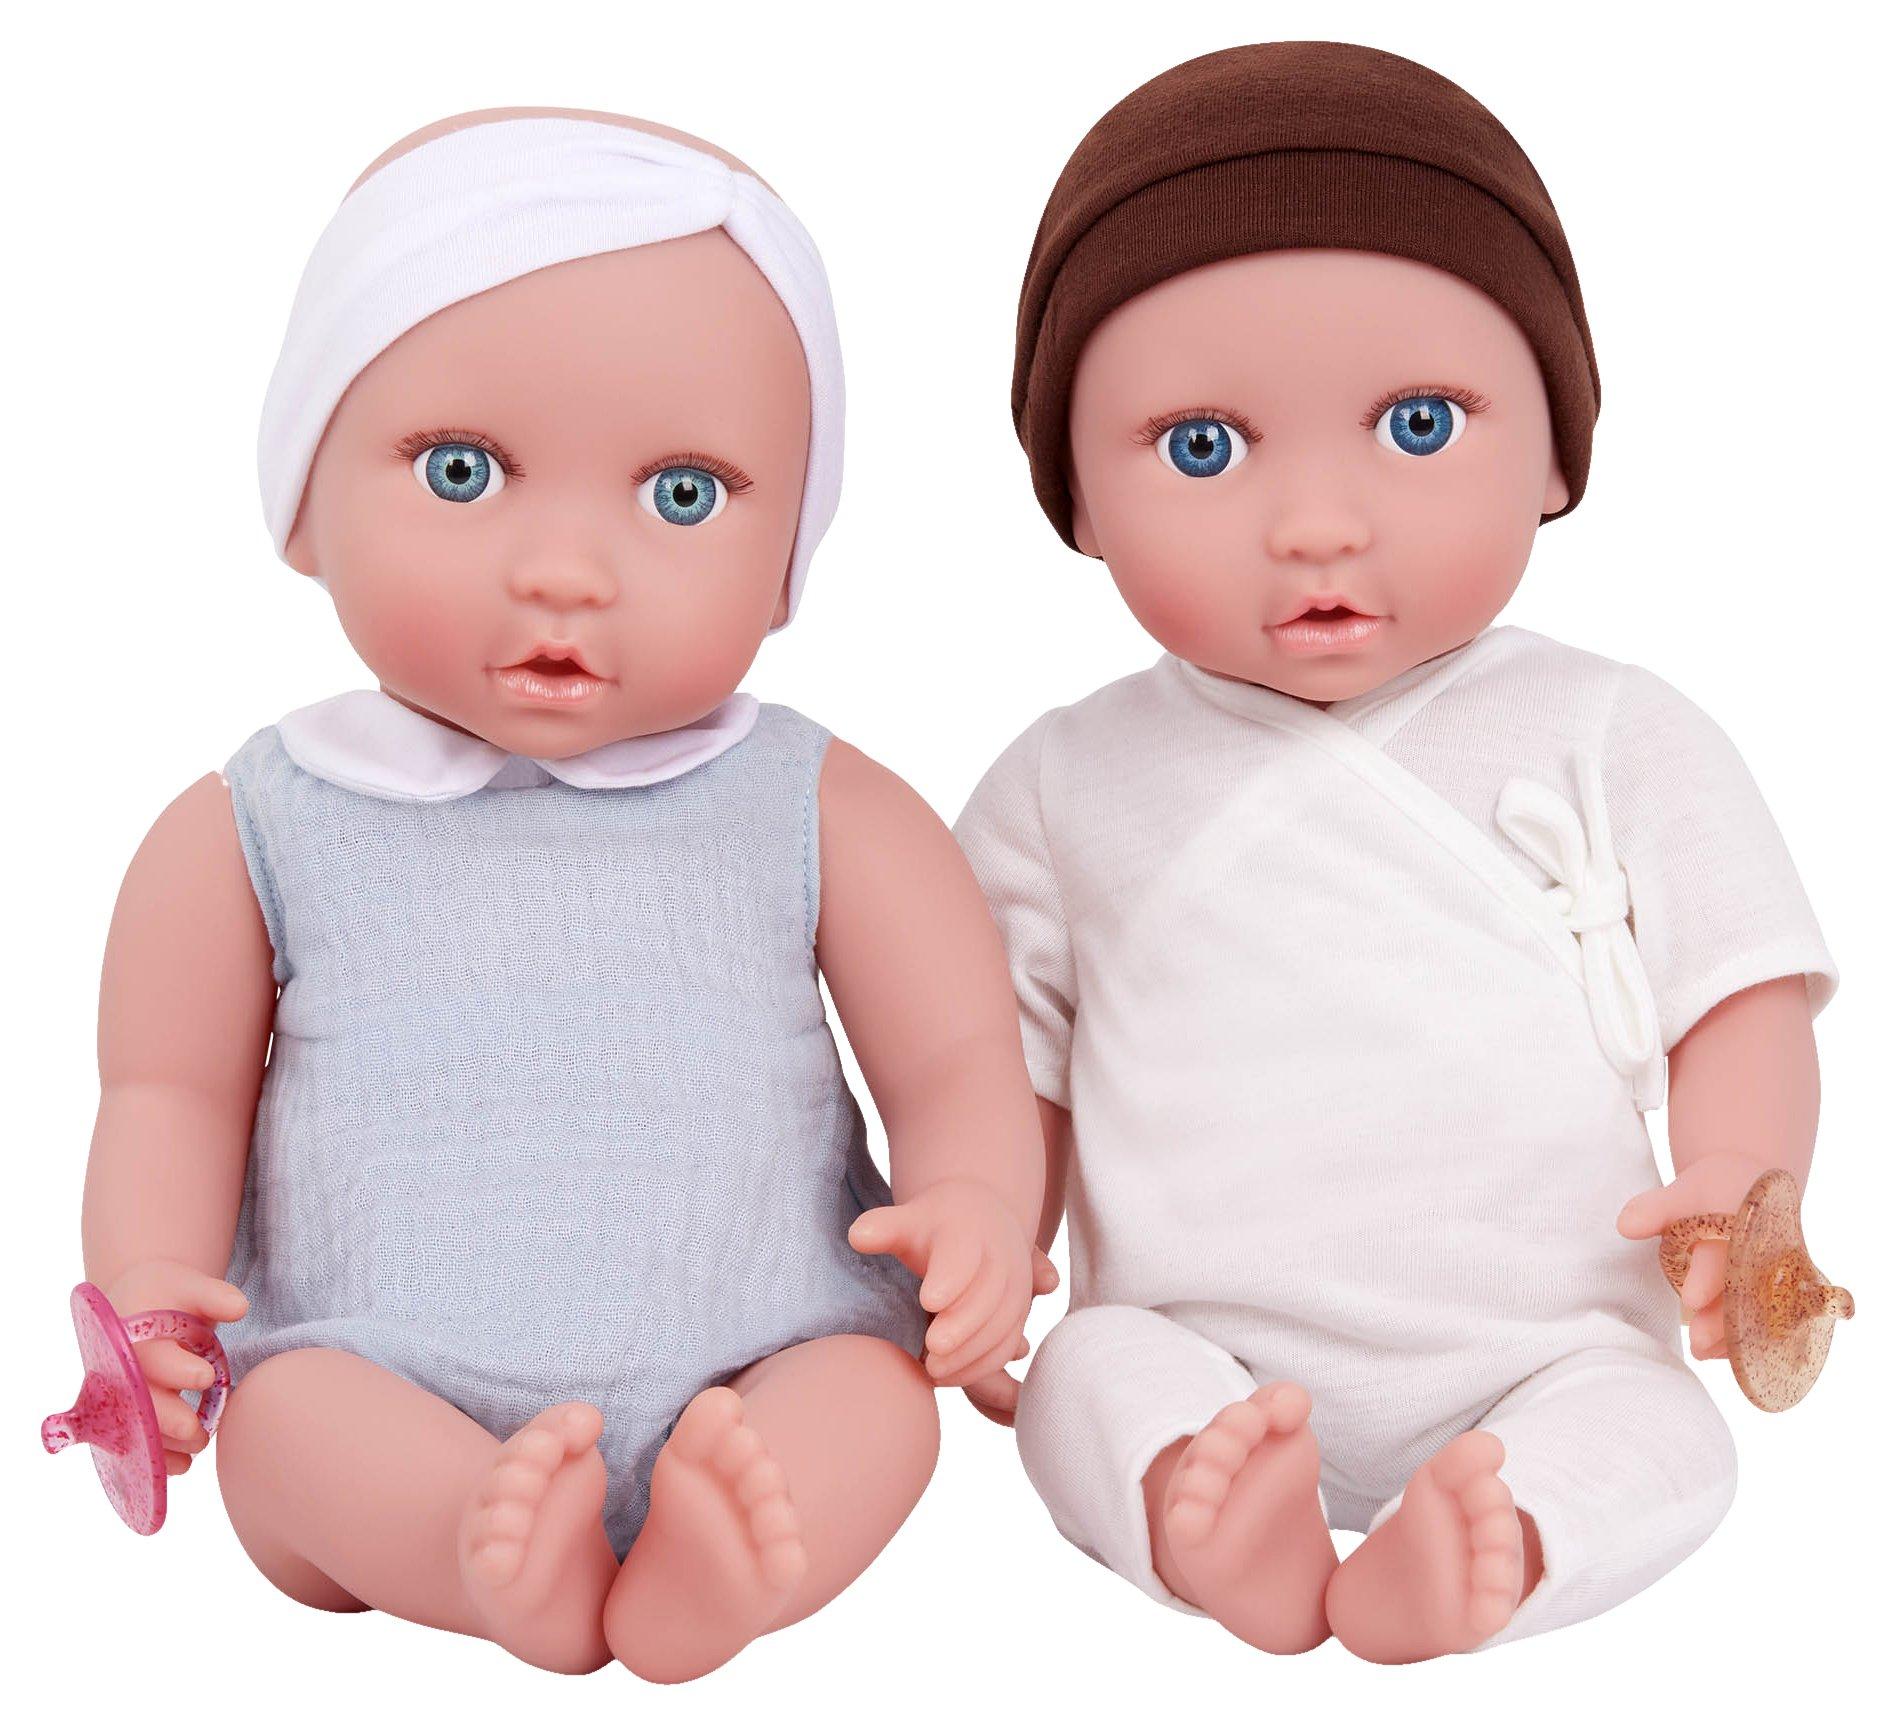 BABI by Battat 2 pc. 14  Newborn Twin Blue Eyes  Baby Dolls